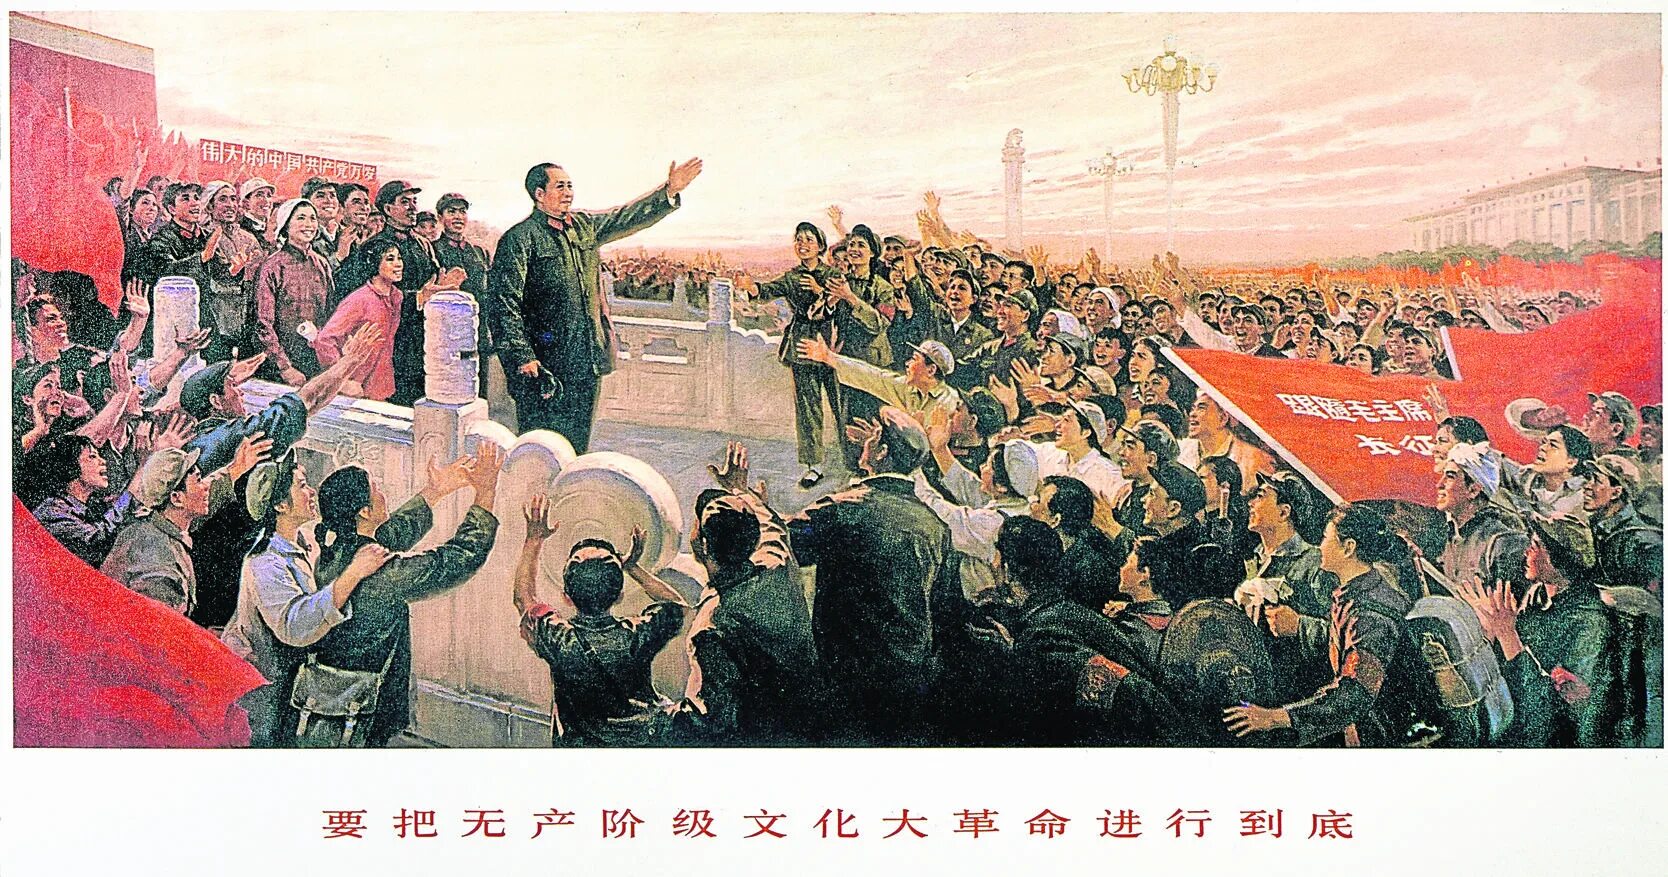 Мао Цзэдун революция. Мао Цзэдун 1966. Мао Цзэдун провозглашает КНР. Мао Цзэдун культурная революция хунвейбины. Большой скачок культурной революции